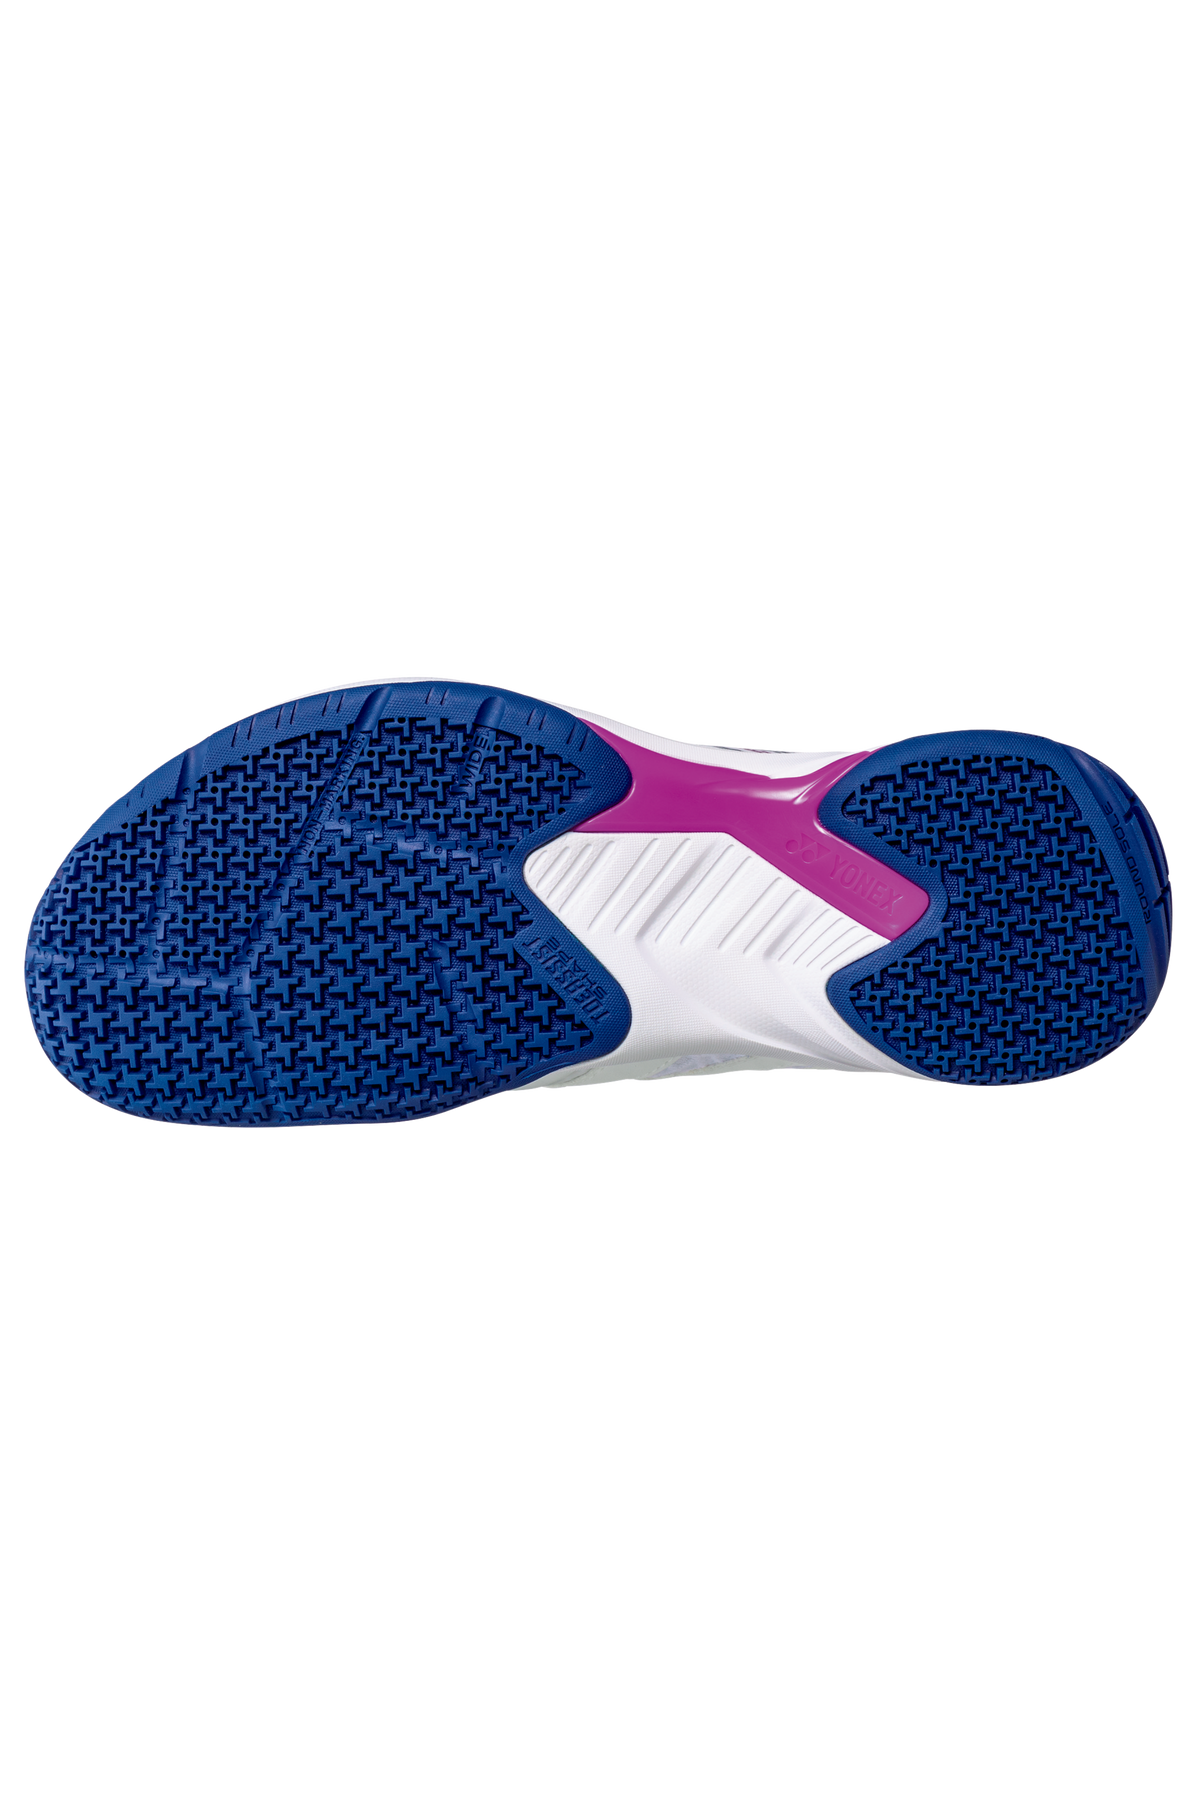 Yonex Cascade Accel Wide Badminton Shoes 2023 White/Purple